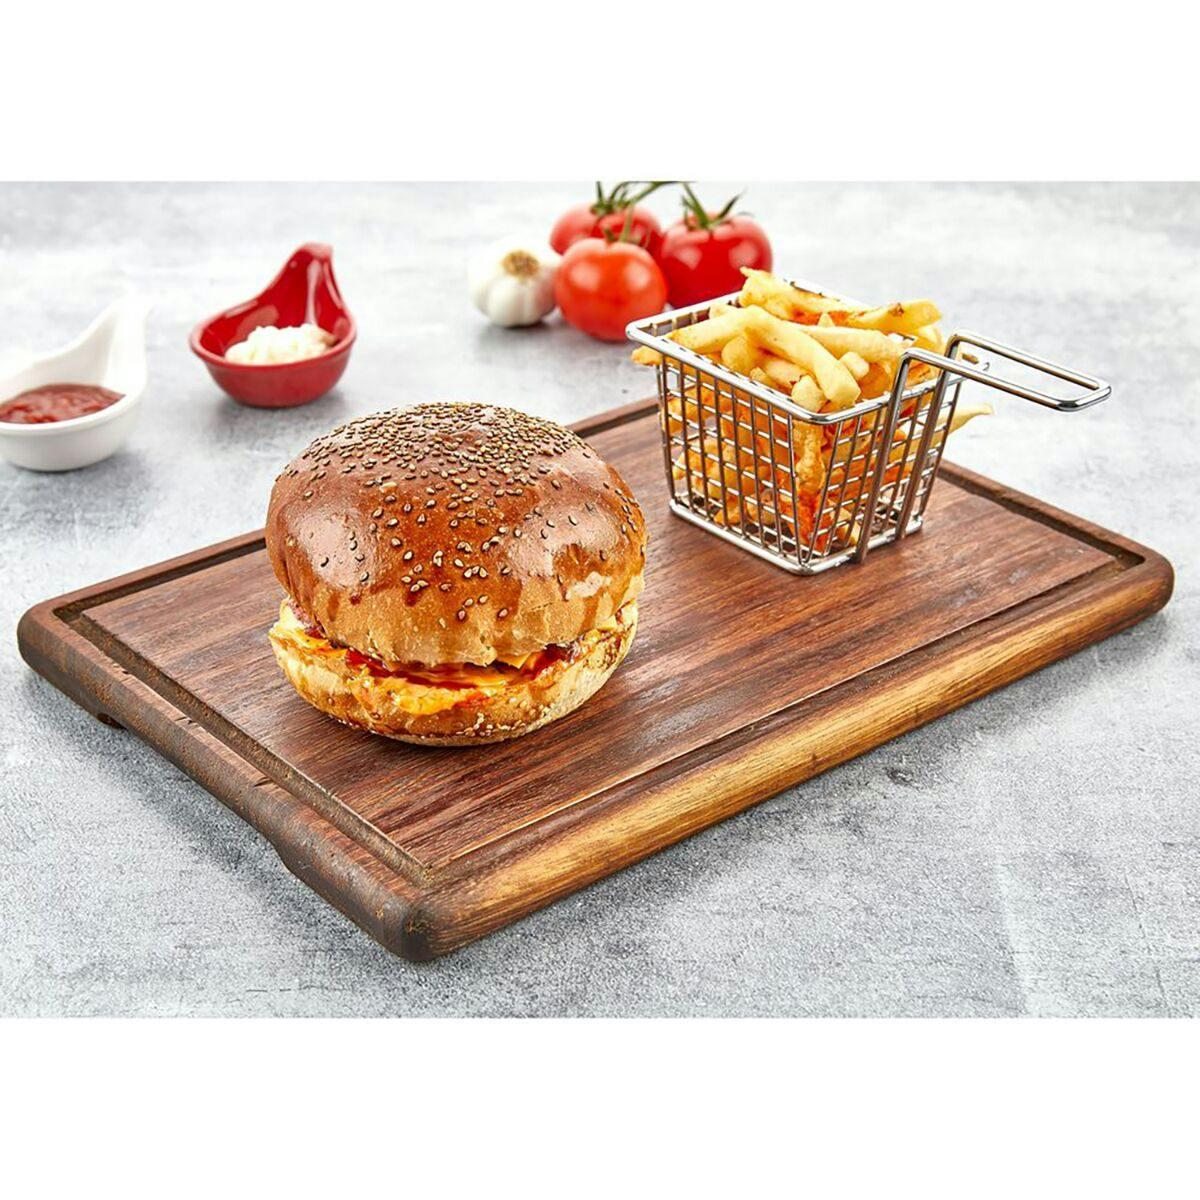 (6 pieces) Iroko wood steak plate - 350 x 250 mm